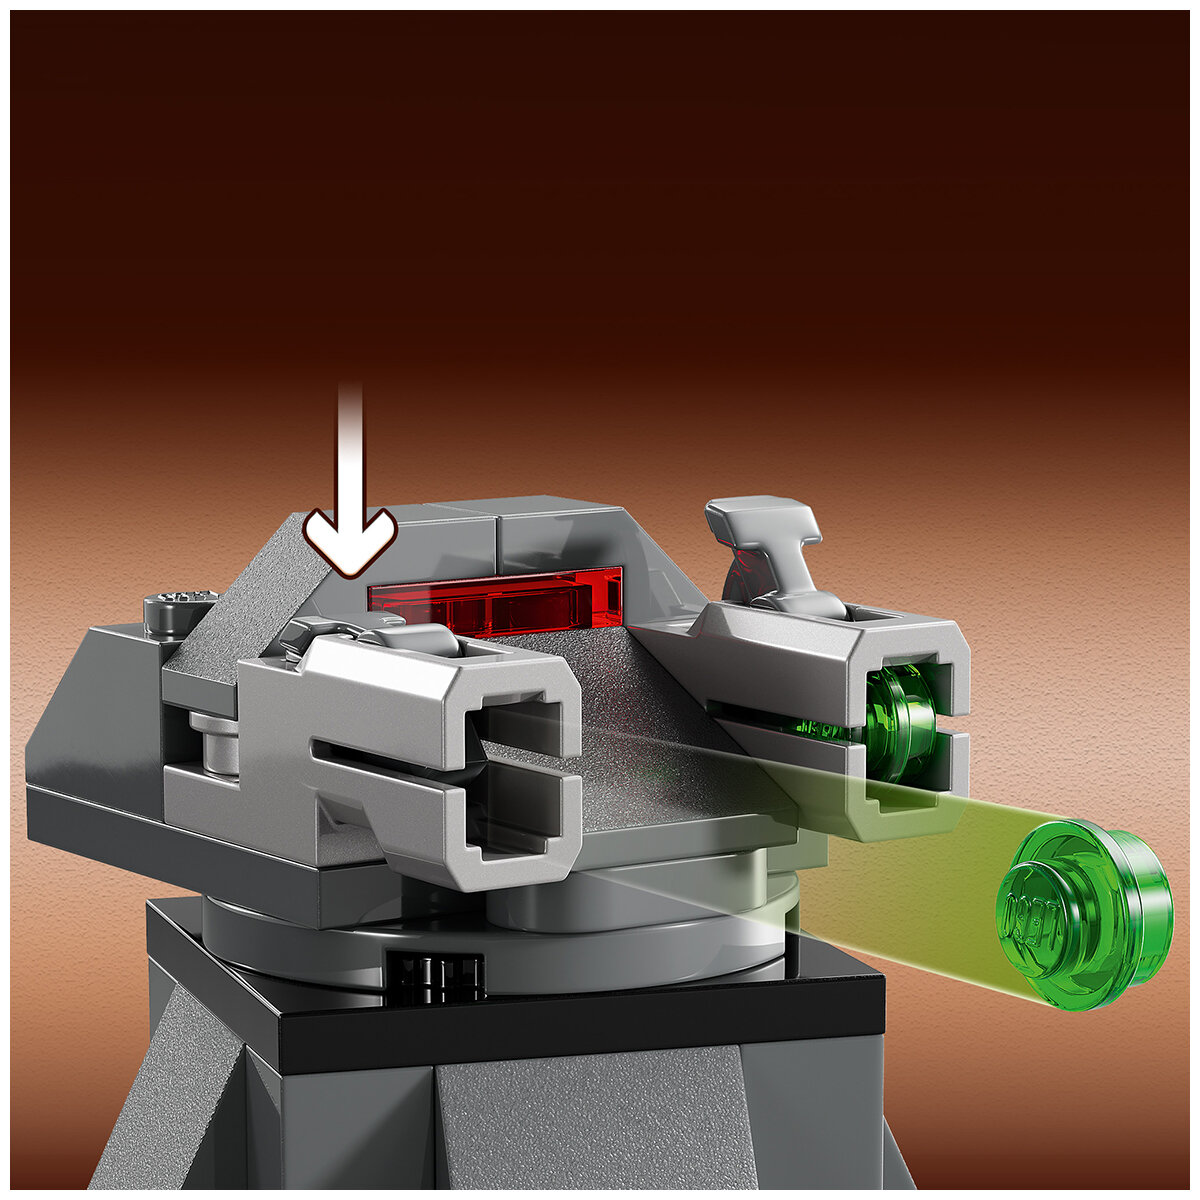 LEGO Star Wars Paz Vizsla and Moff Gideon Battle 75386